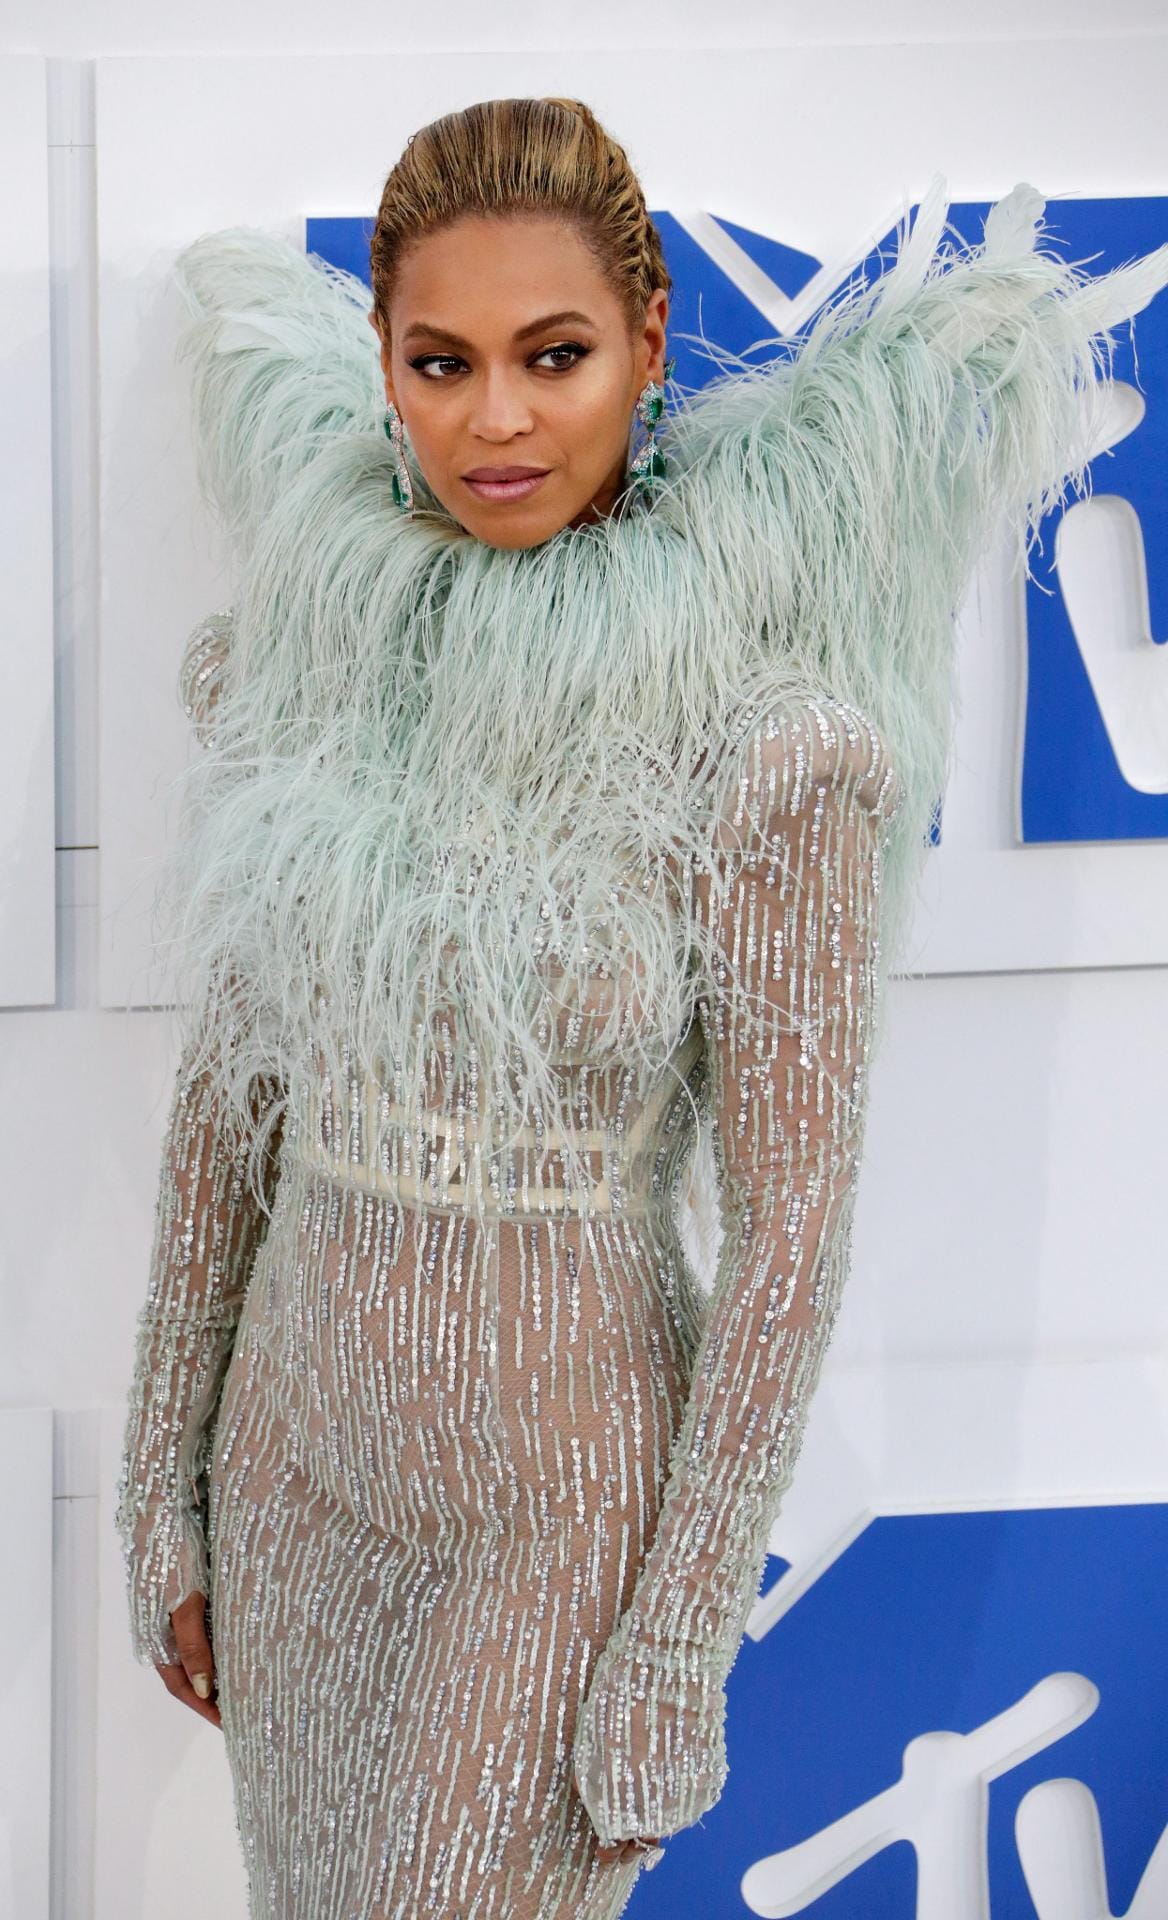 Eisprinzessin mit Federvieh am Hals: Beyoncé zog mit diesem ausgefallenen Outfit alle Blicke auf sich.